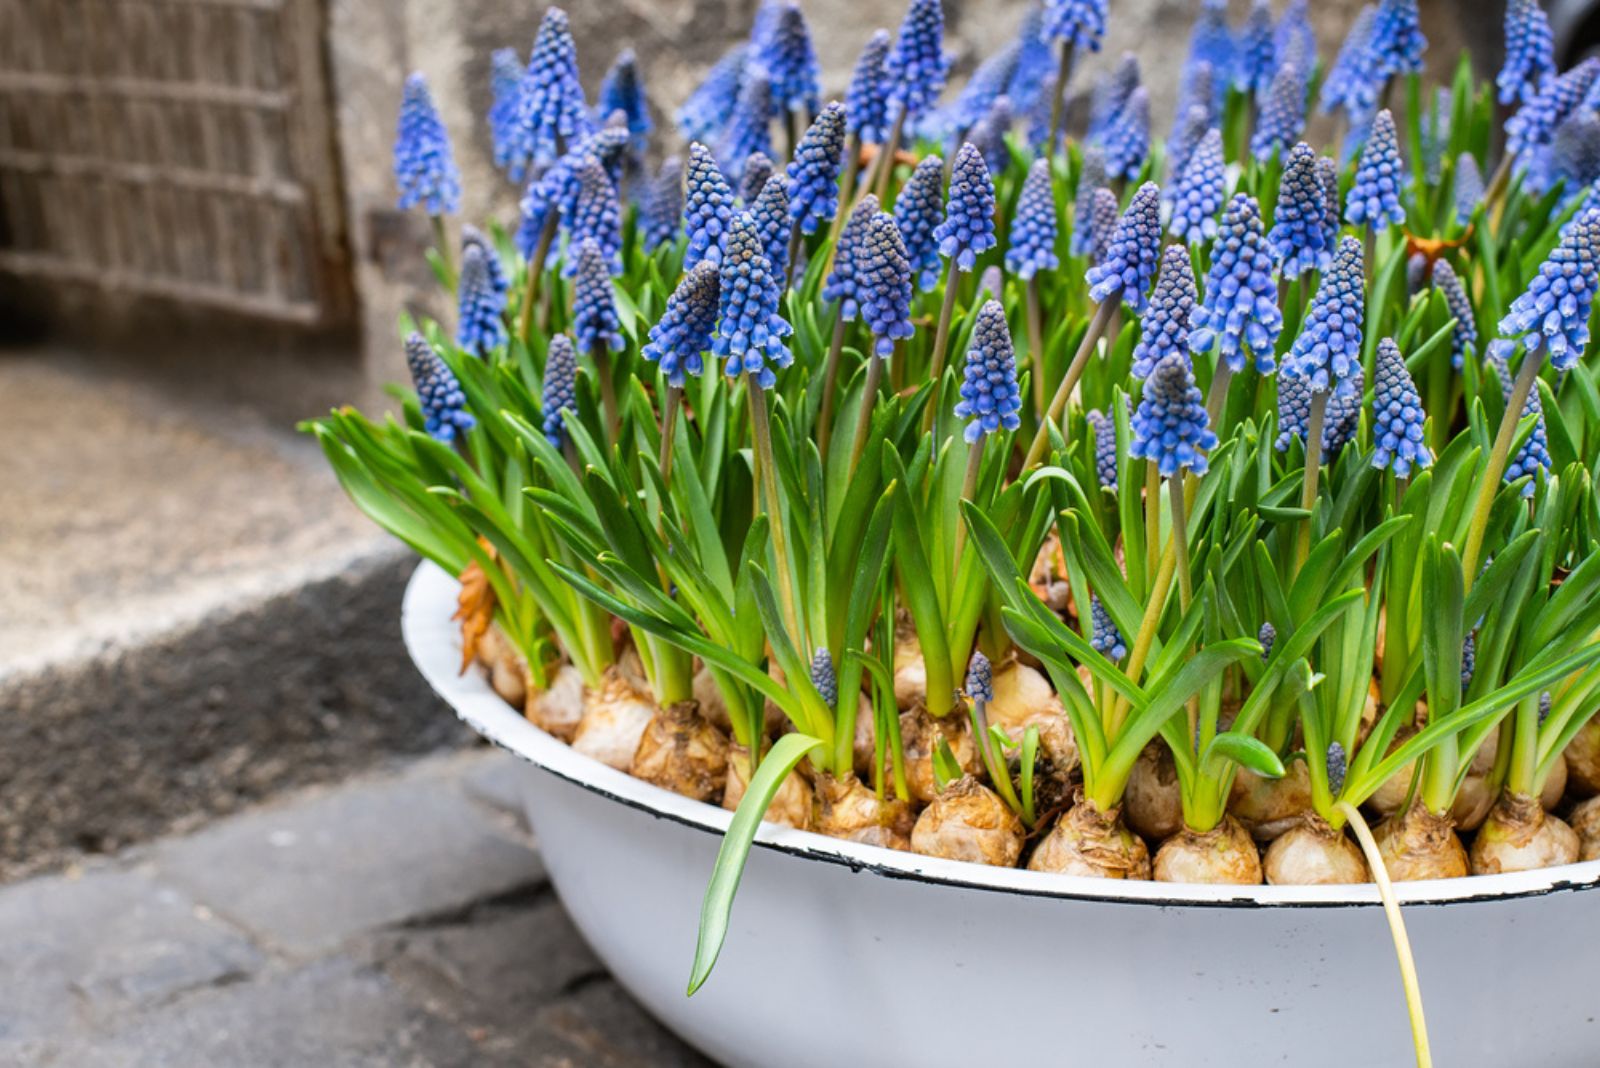 Blue muscari flowers in spring season in a flower pot